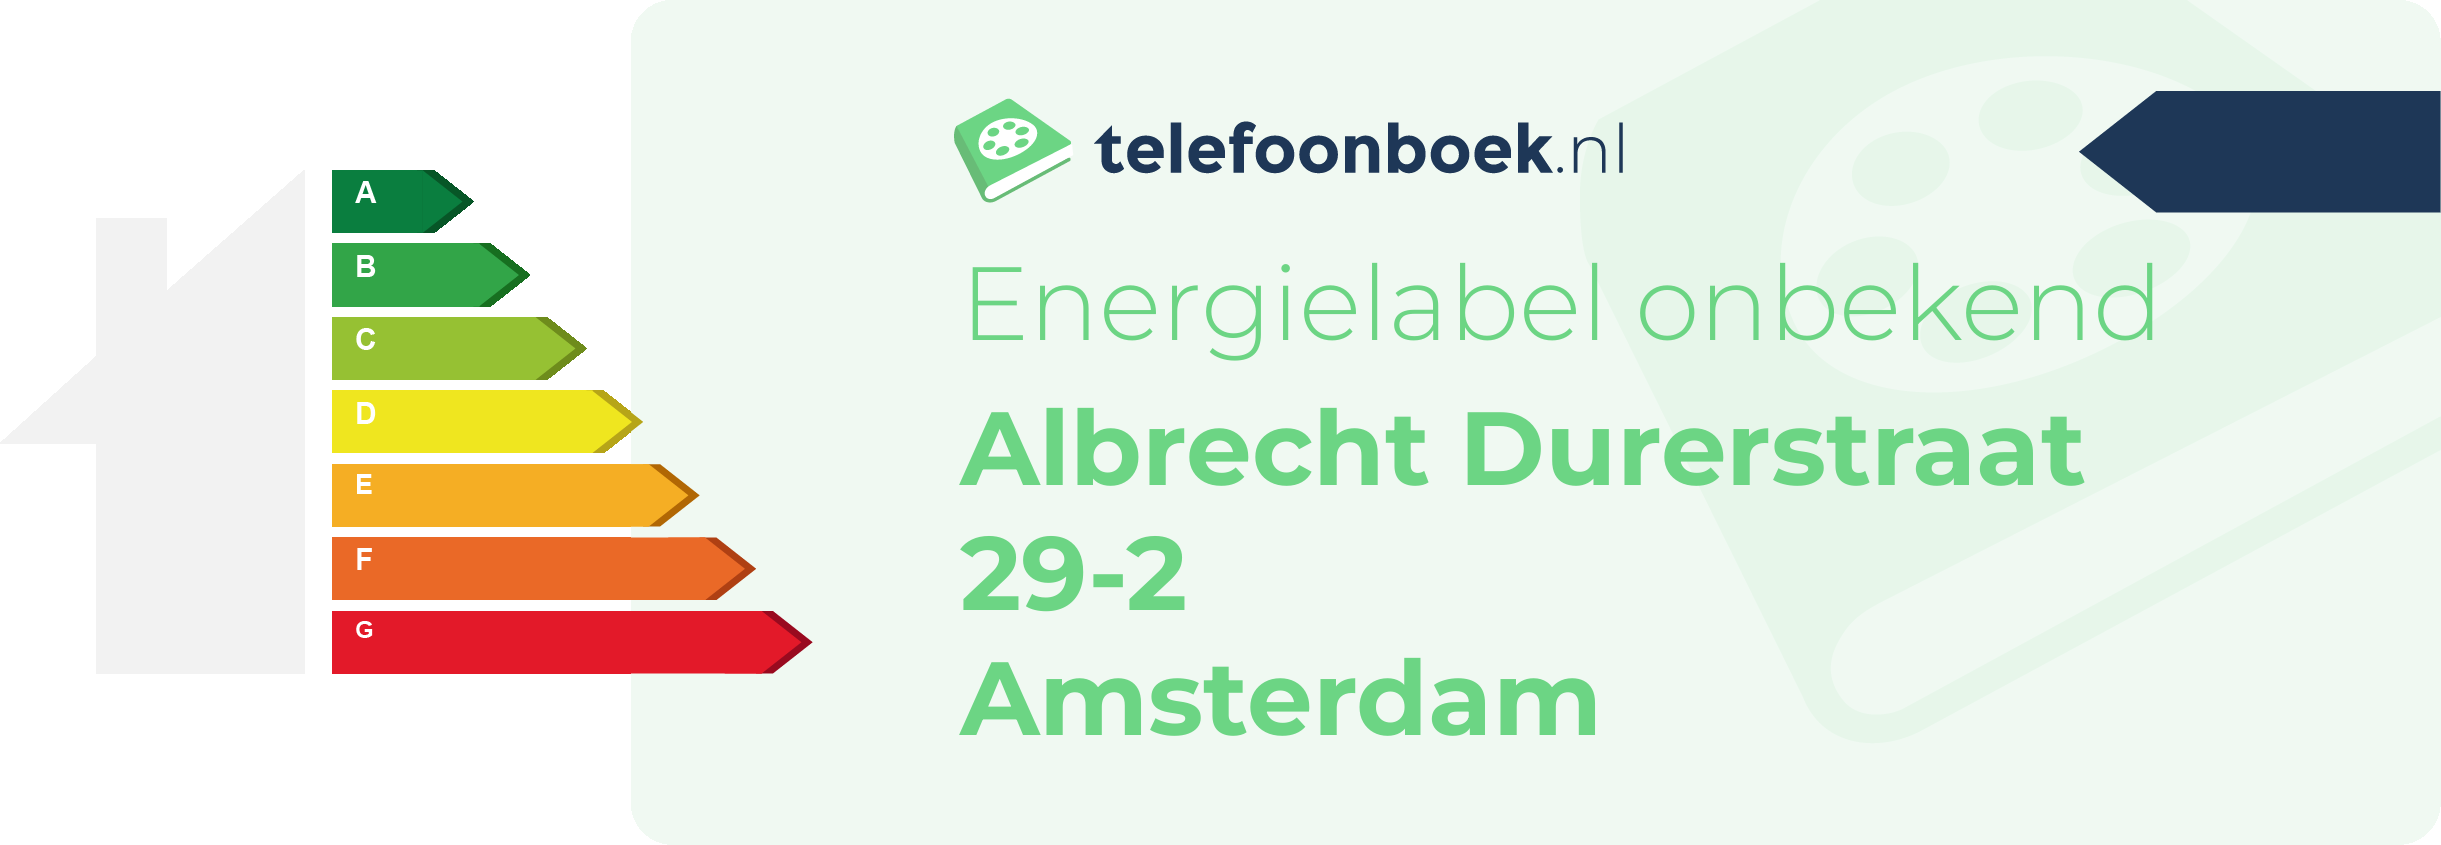 Energielabel Albrecht Durerstraat 29-2 Amsterdam